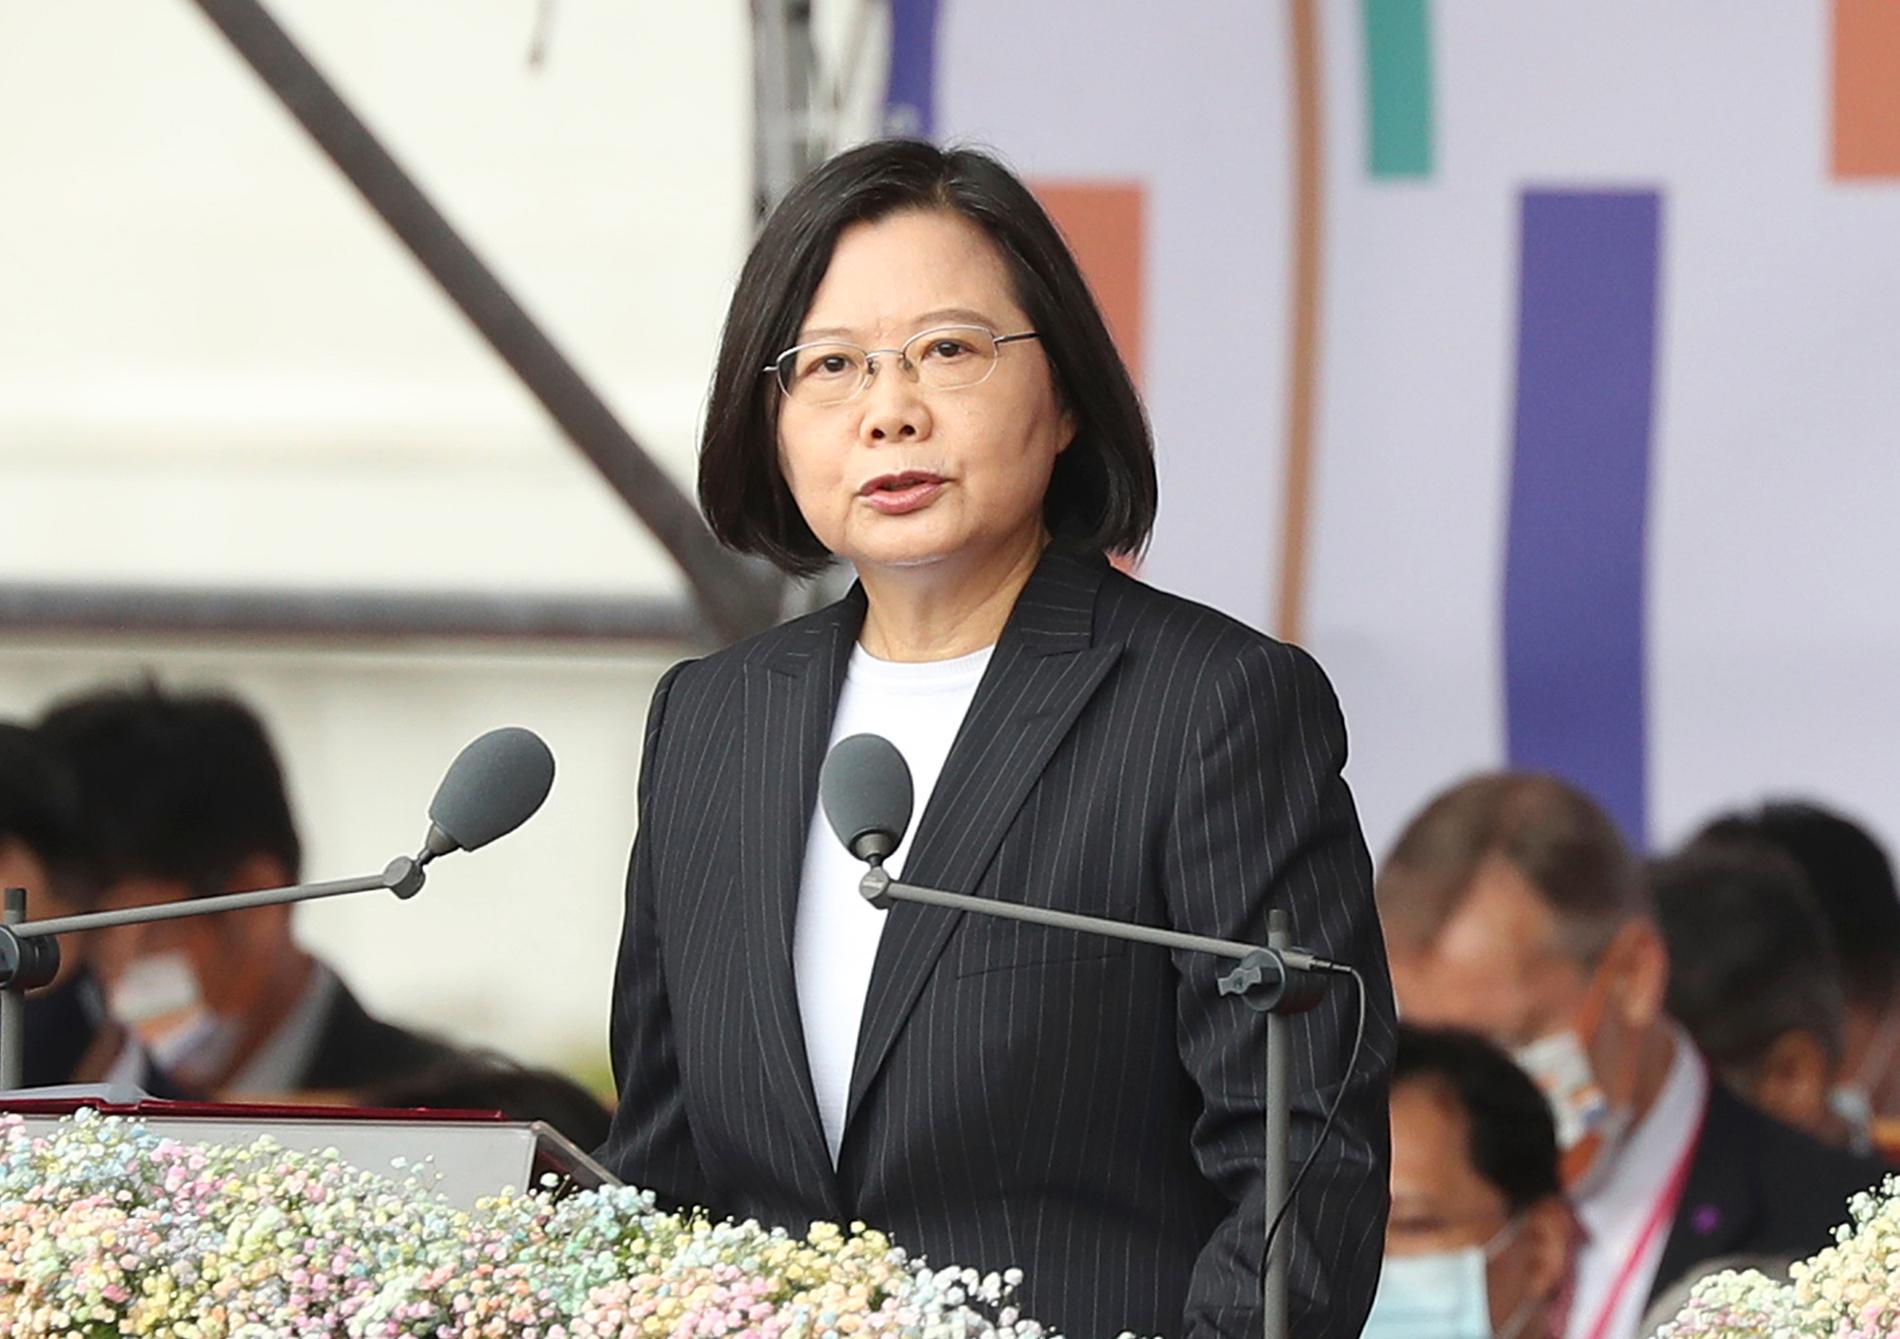 Taiwans president Tsai Ing-Wen varnar omvärlden för katastrofala följder om Kina med våld skulle införliva Taiwan.